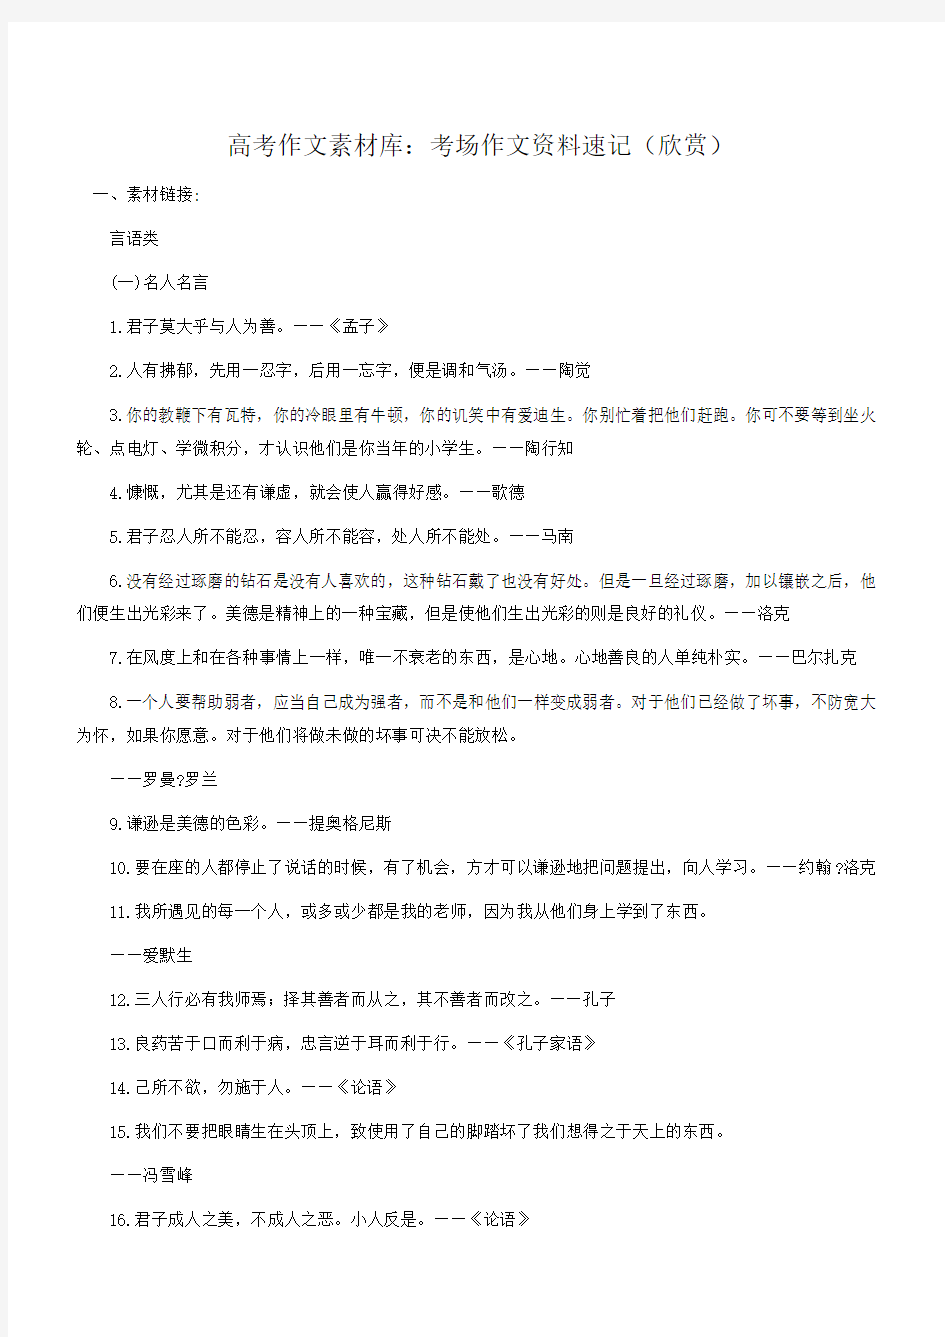 2014高考作文素材库：考场作文资料速记(欣赏)